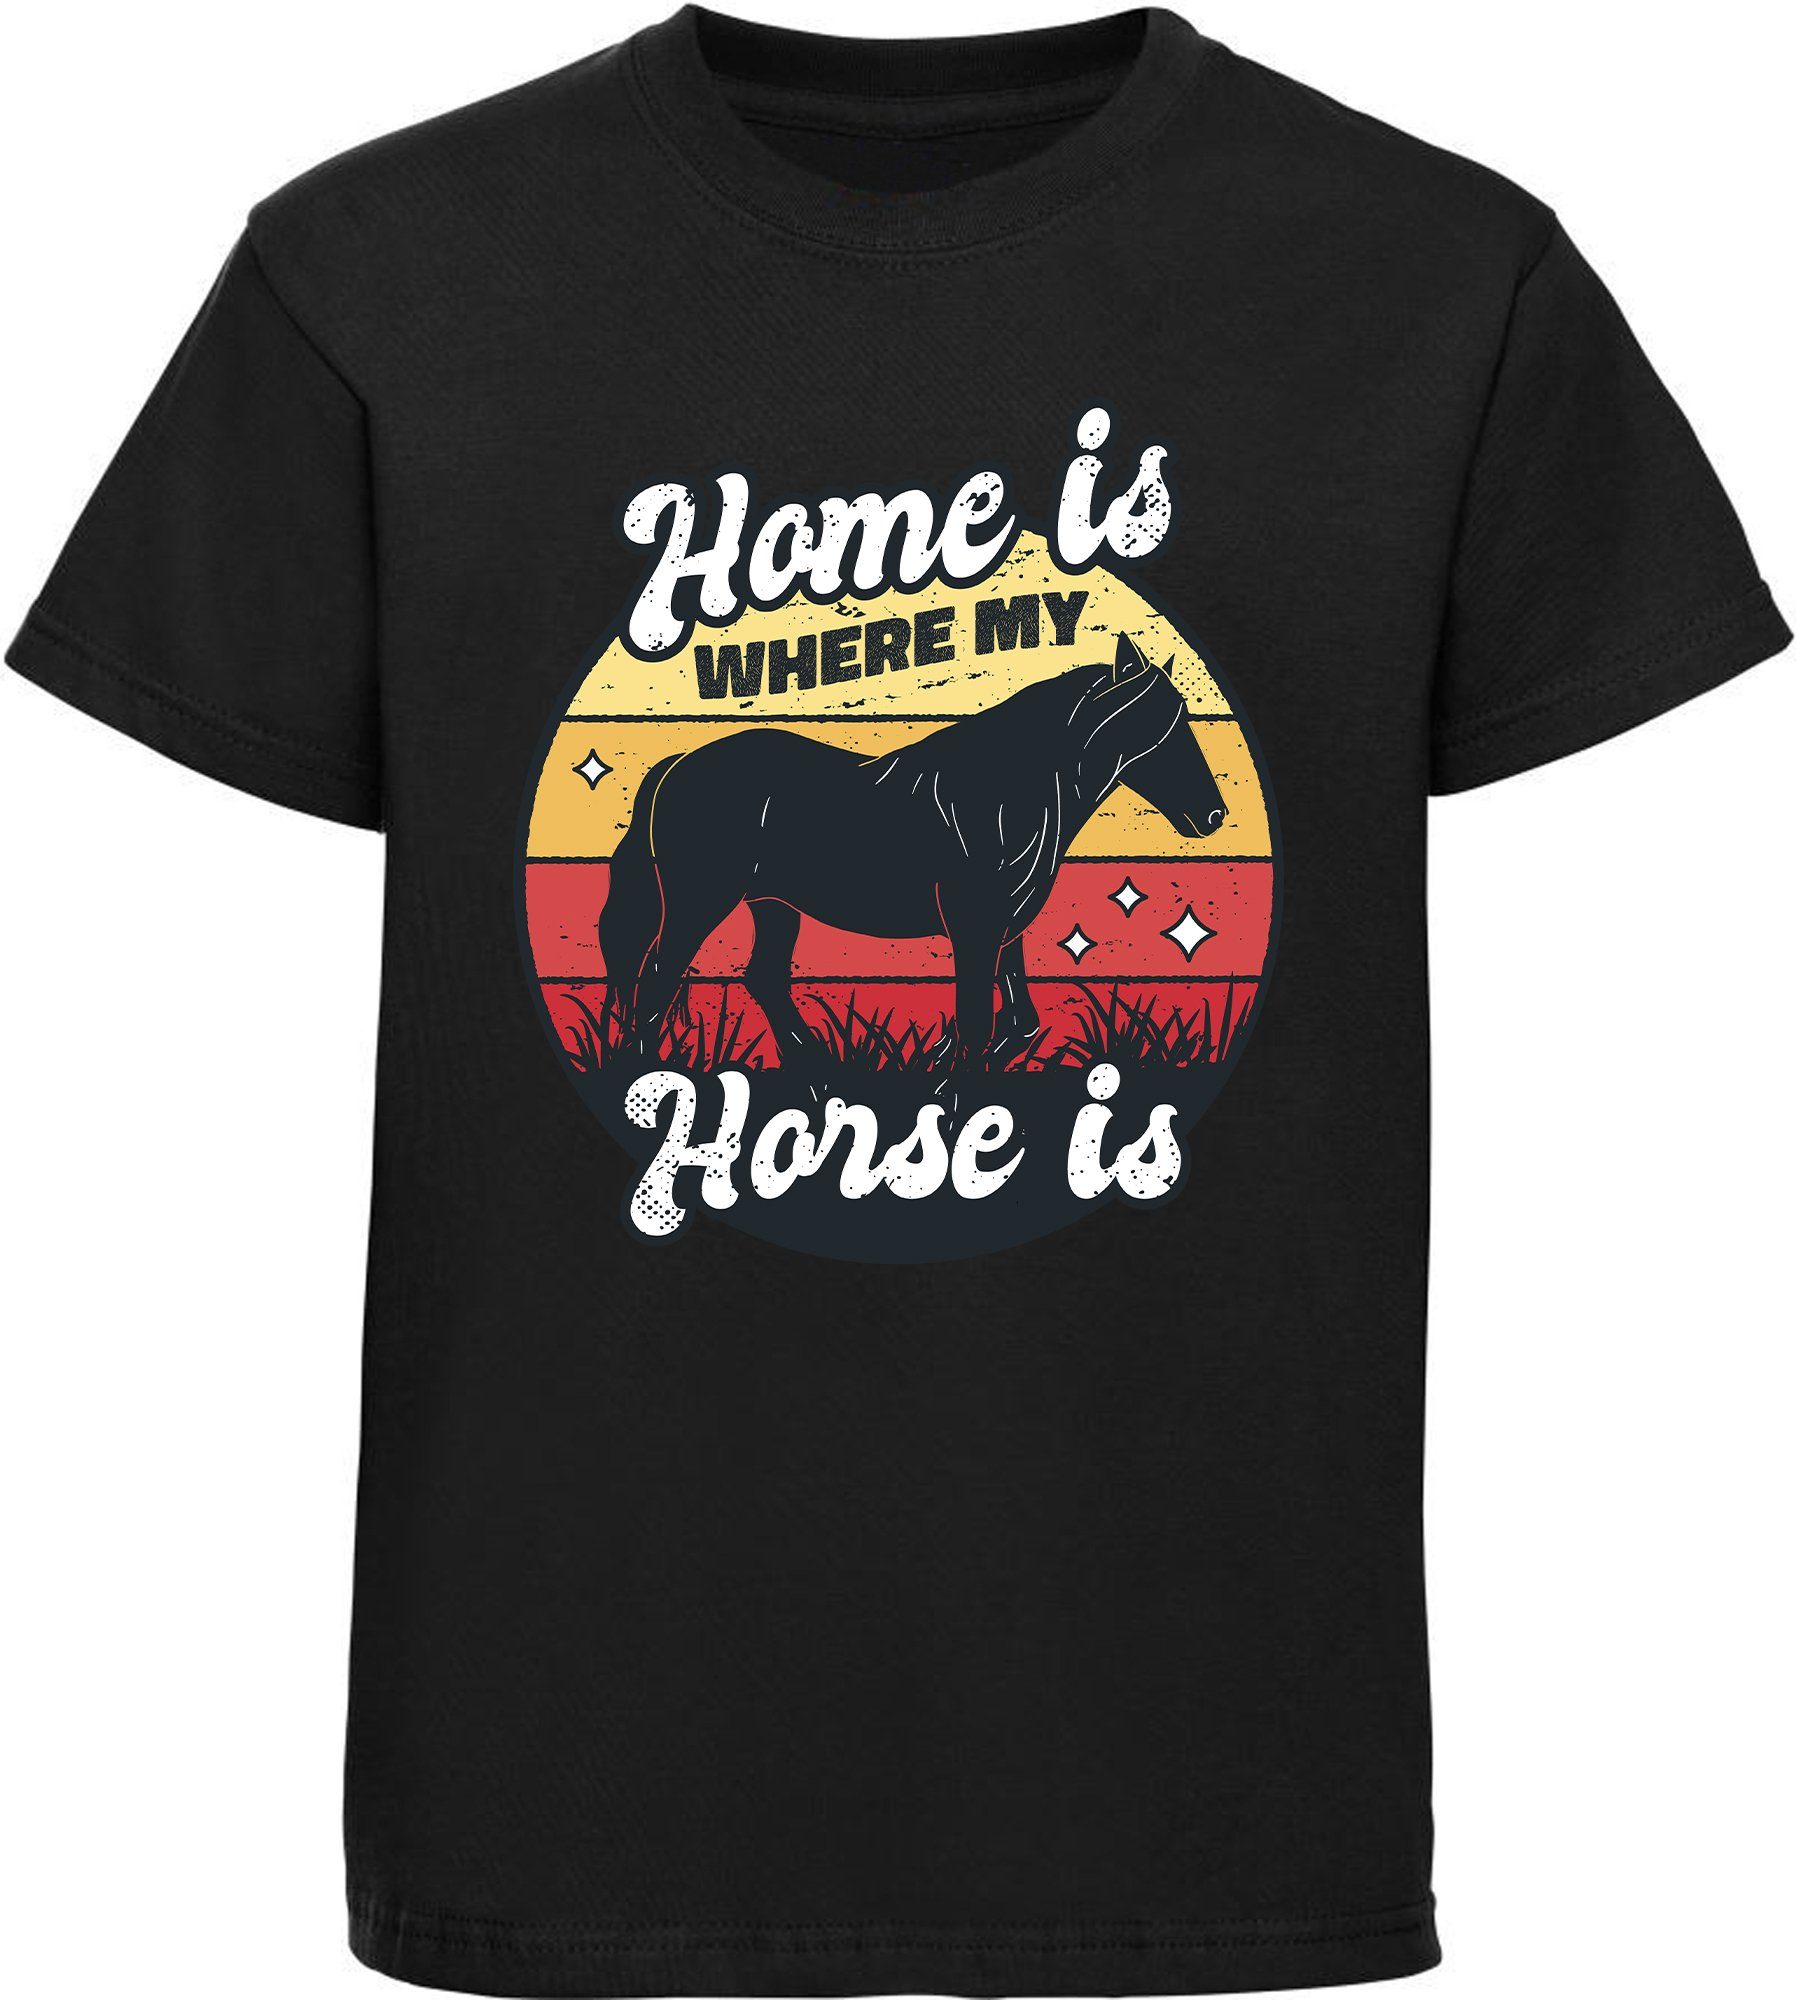 MyDesign24 Print-Shirt bedrucktes Mädchen T-Shirt - Home is where my horse is Baumwollshirt mit Aufdruck, i156 schwarz